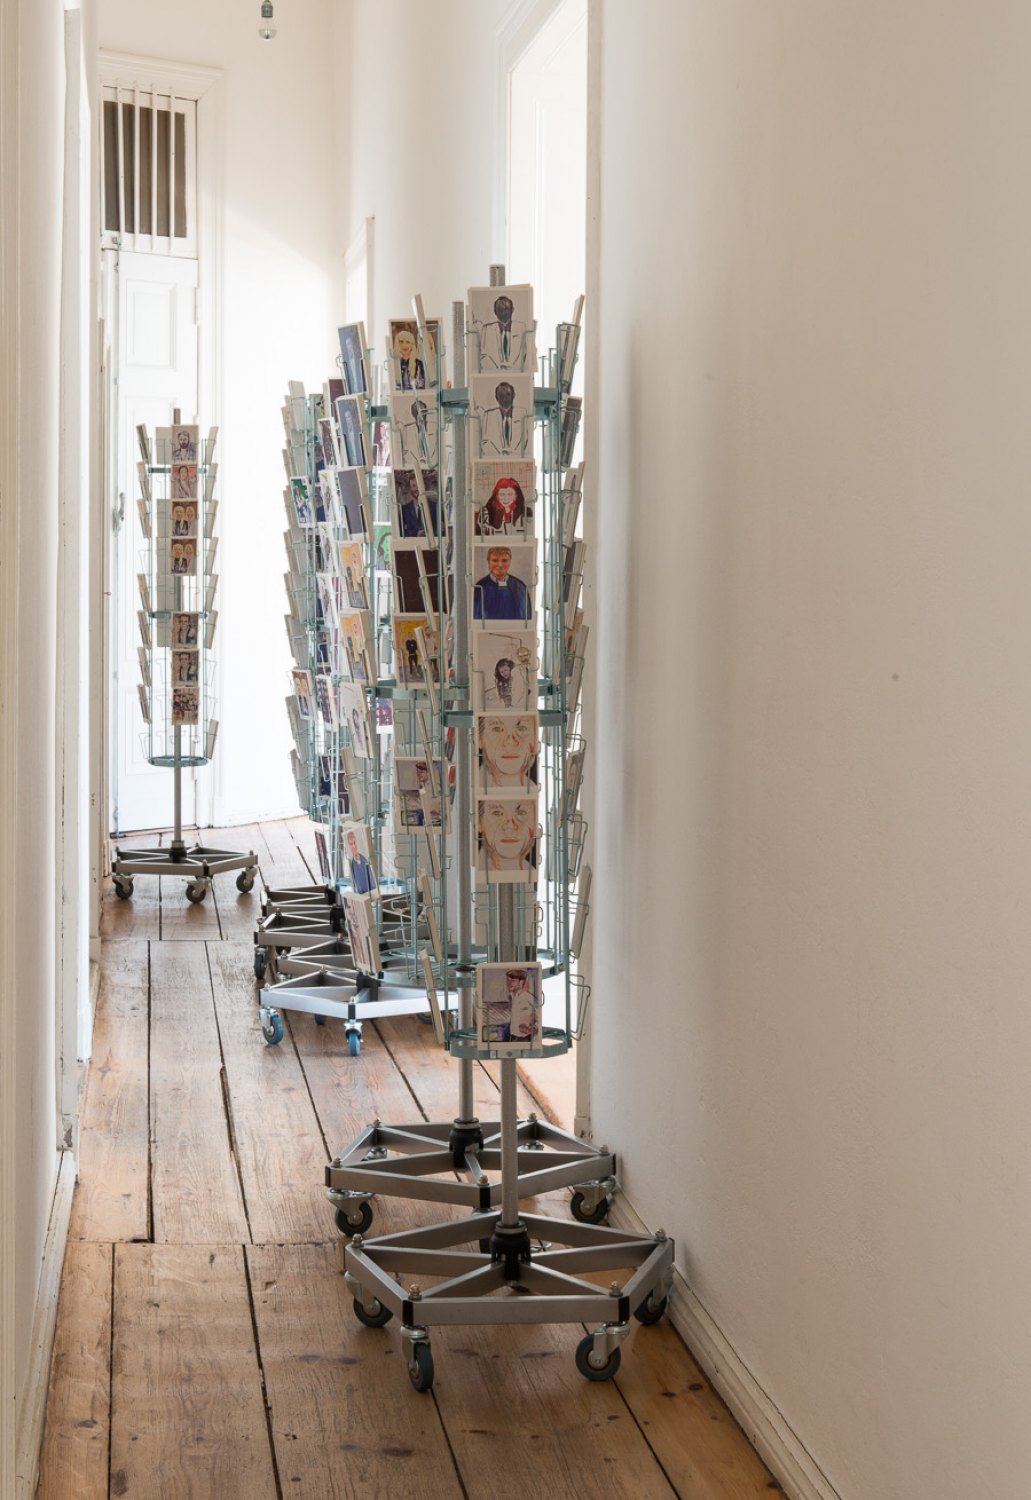 Reena Spaulings Installation view, Galerie Neu, Berlin 2013 